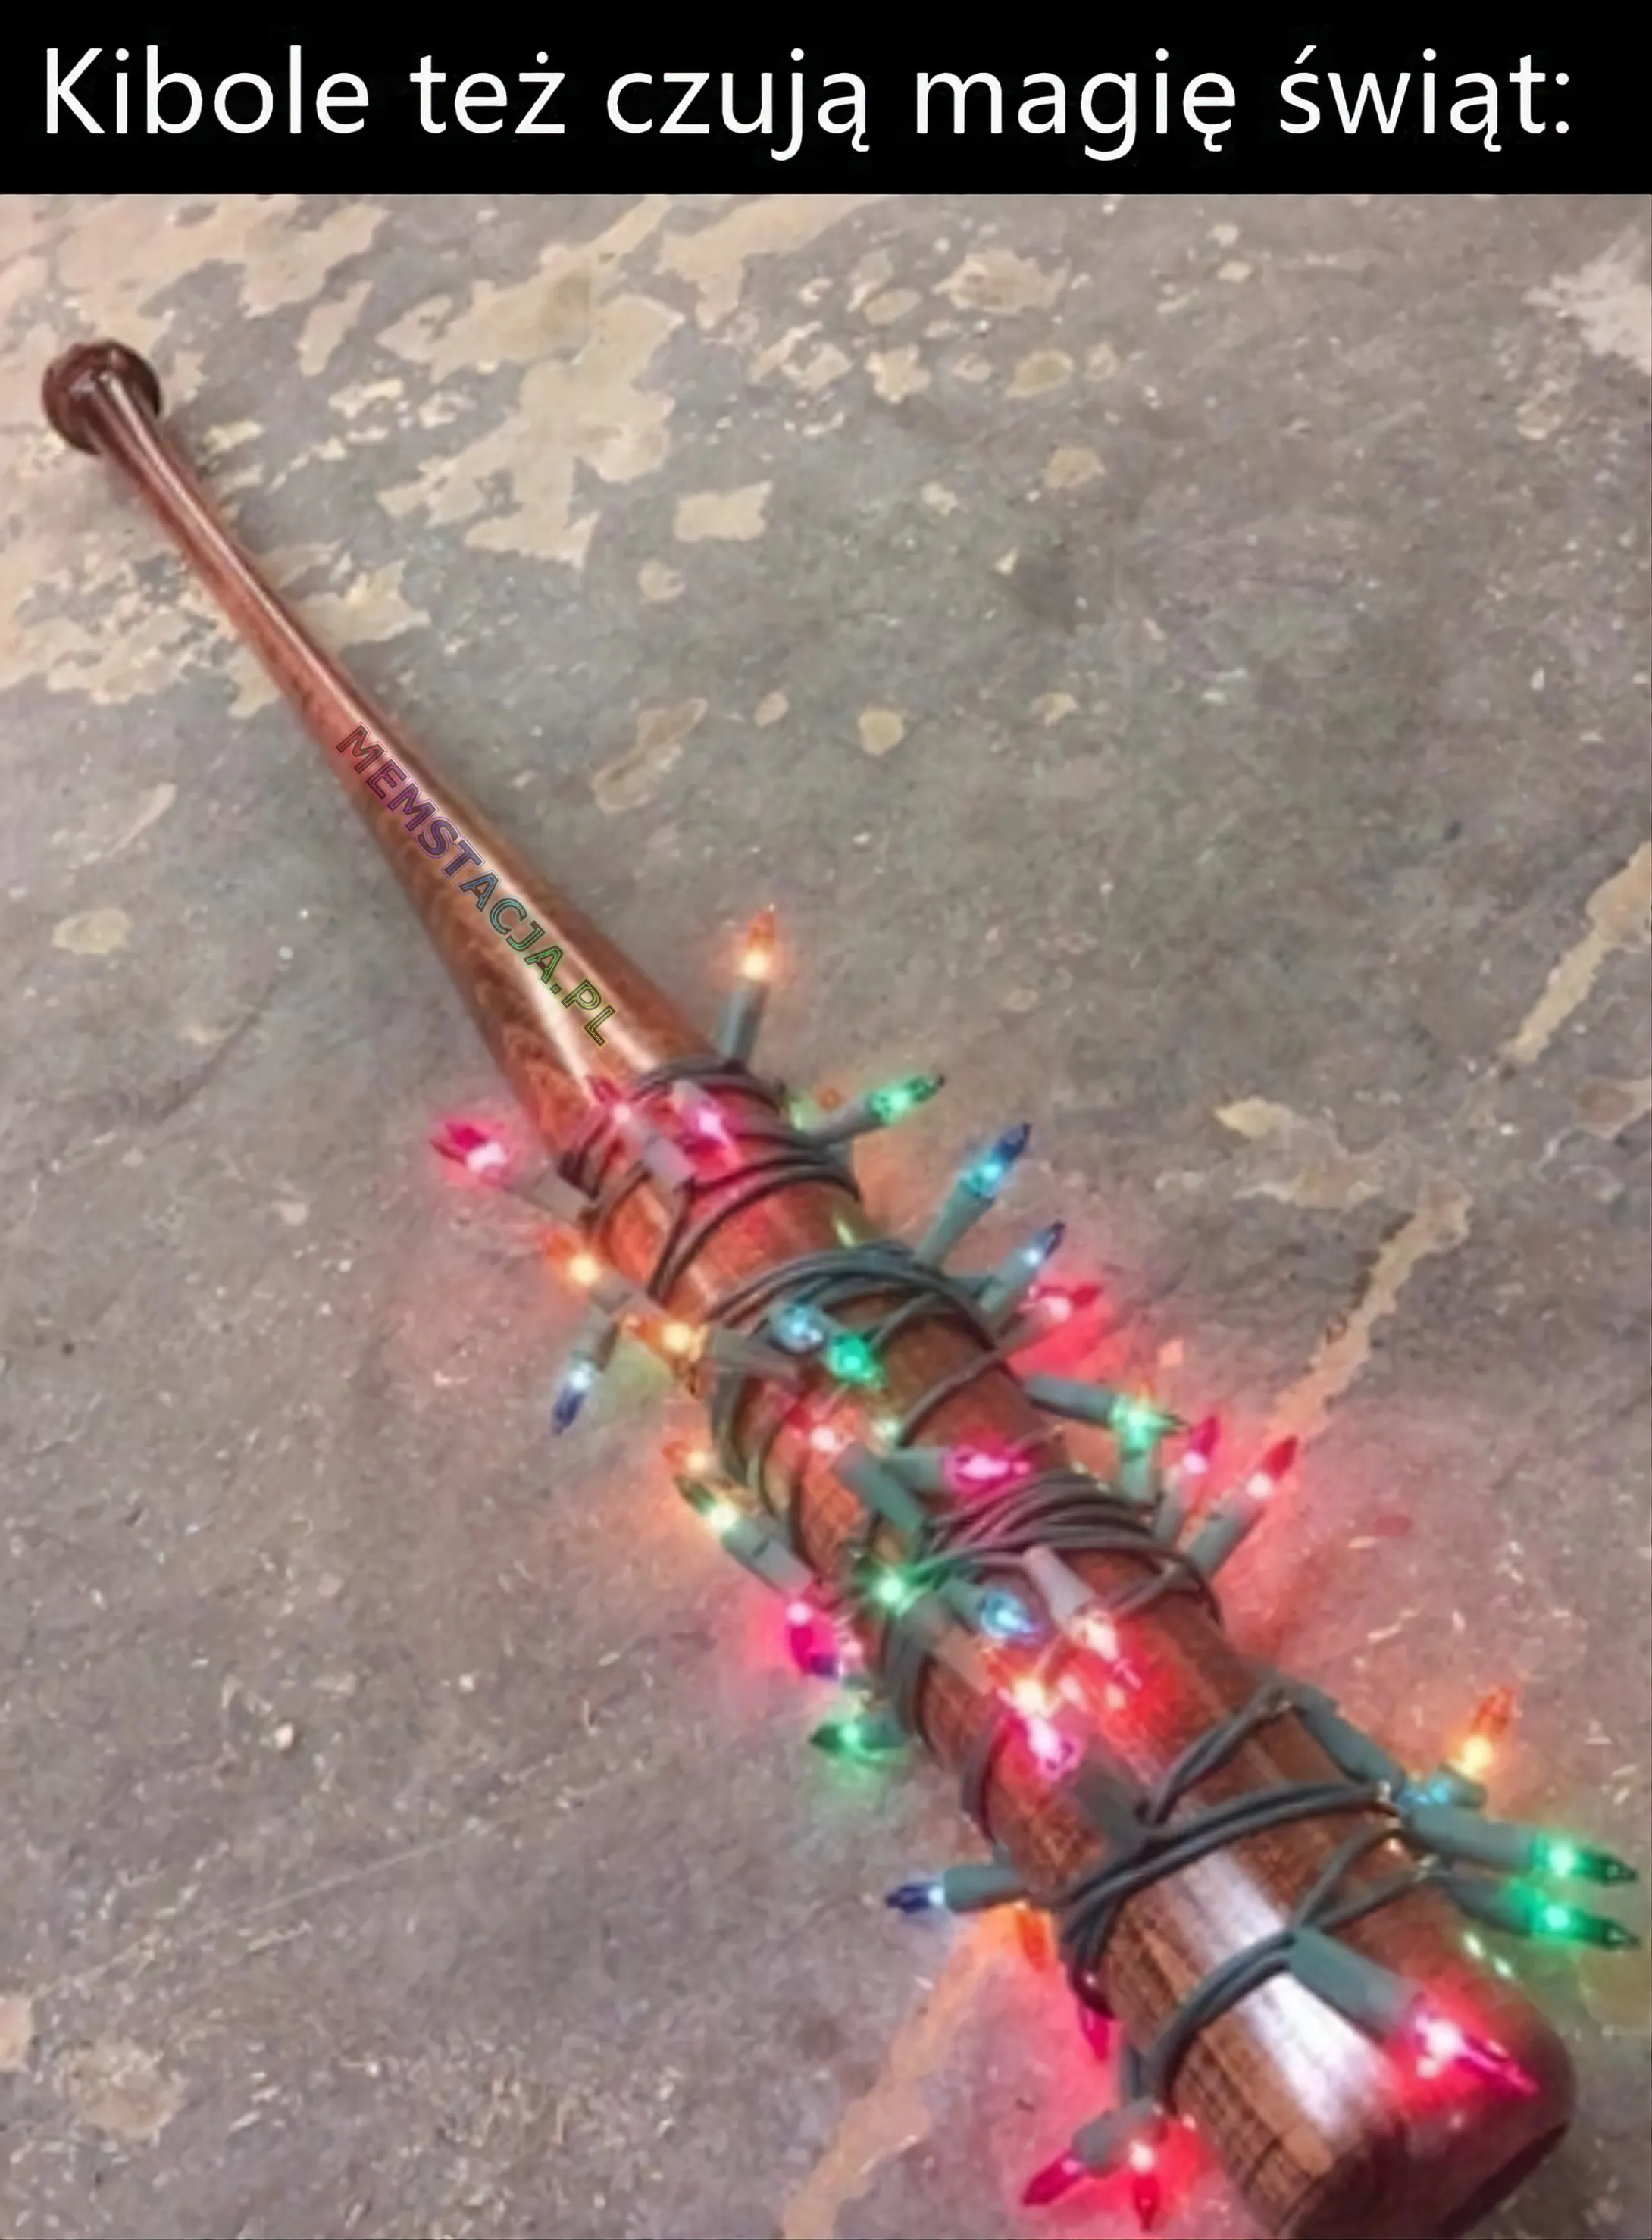 Mem przedstawiający drewniany kij bejsbolowy obwinięty w lampki choinkowe: 'Kibole też czują magię świąt'